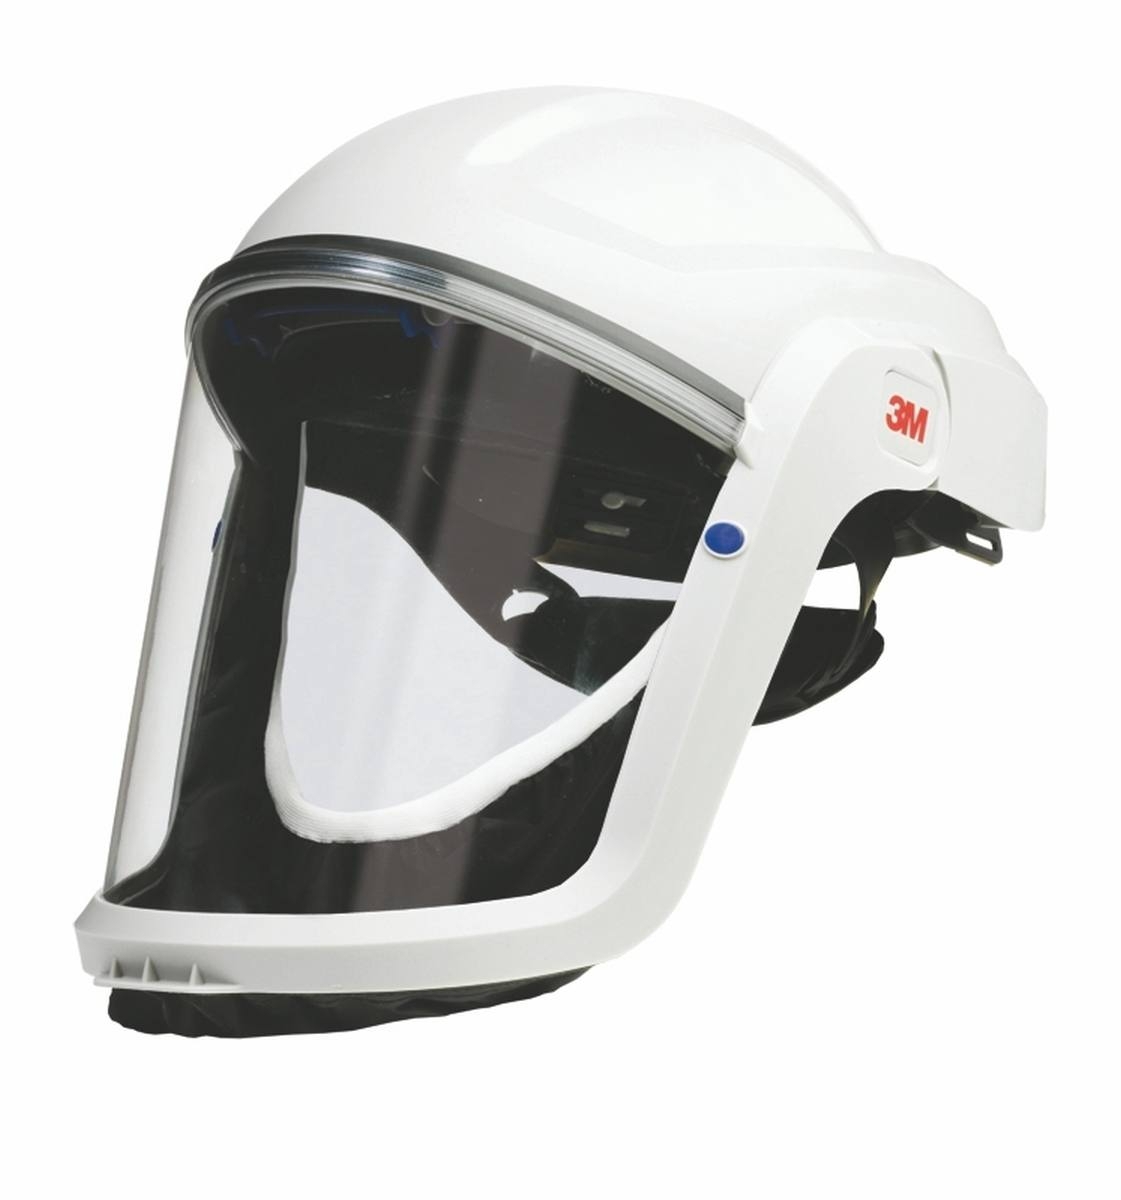 3M TR-315E Versaflo starter pack incl. TR-302E, accesorios y casco de seguridad 3M Versaflo M206 con junta facial de confort y visera de policarbonato, transparente